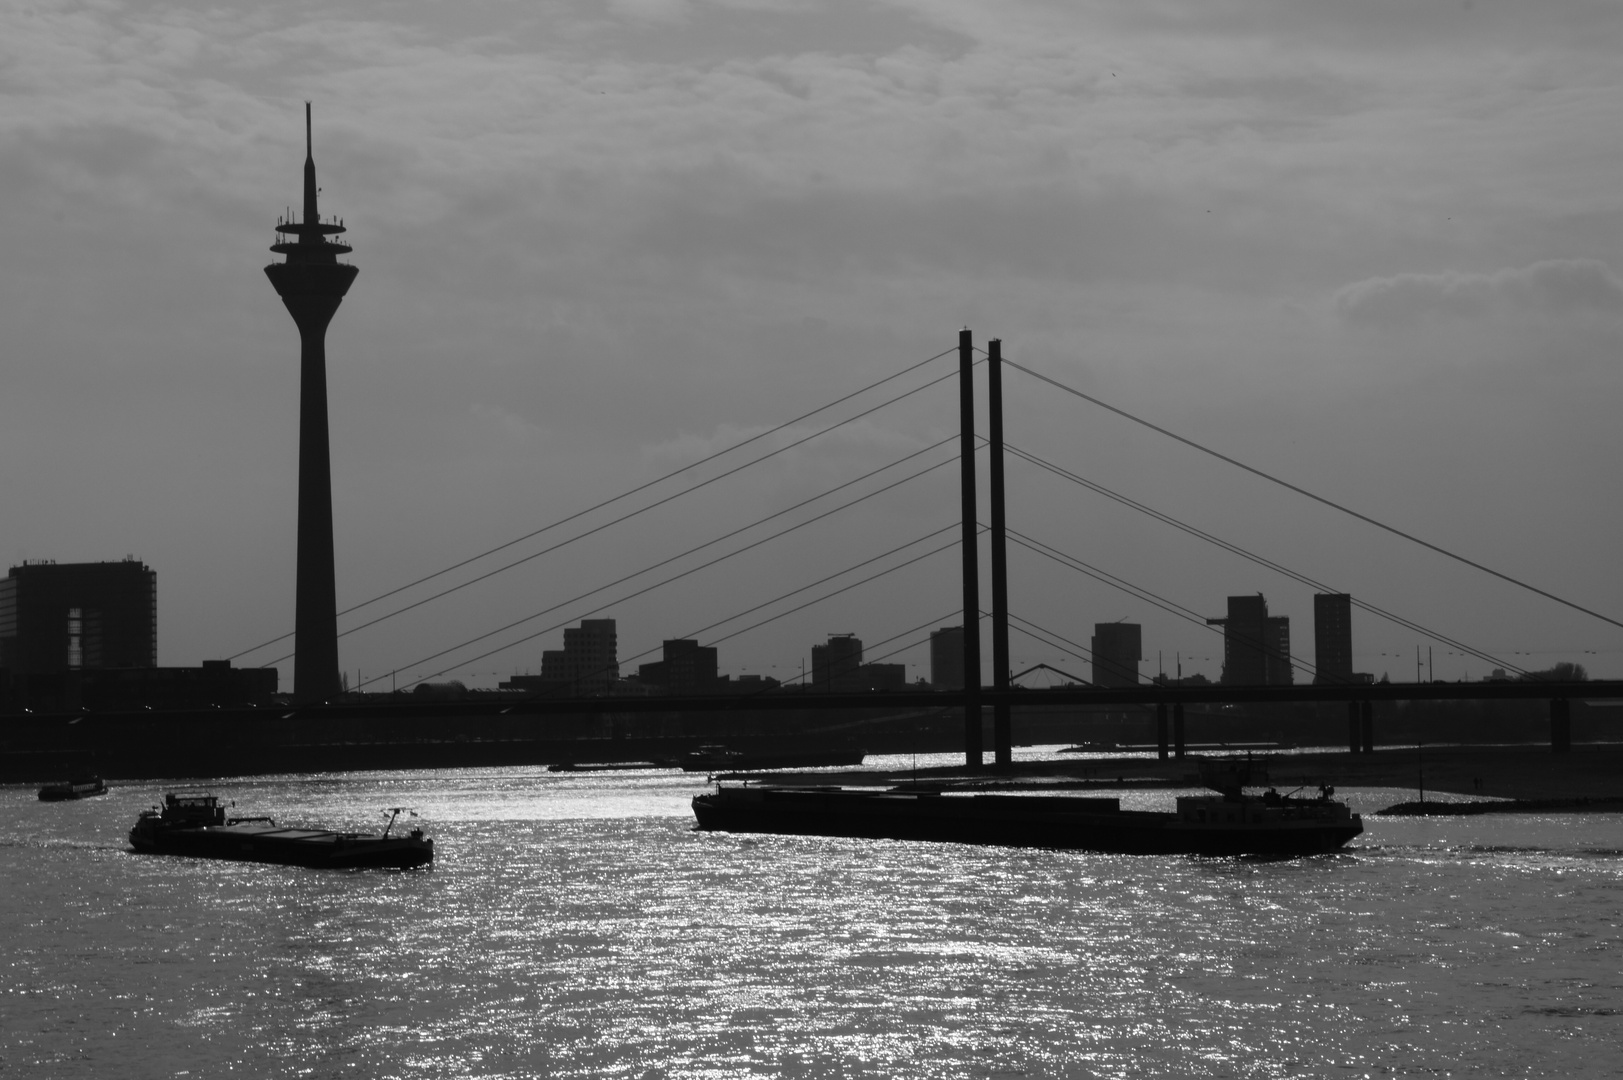 Skyline von Düsseldorf